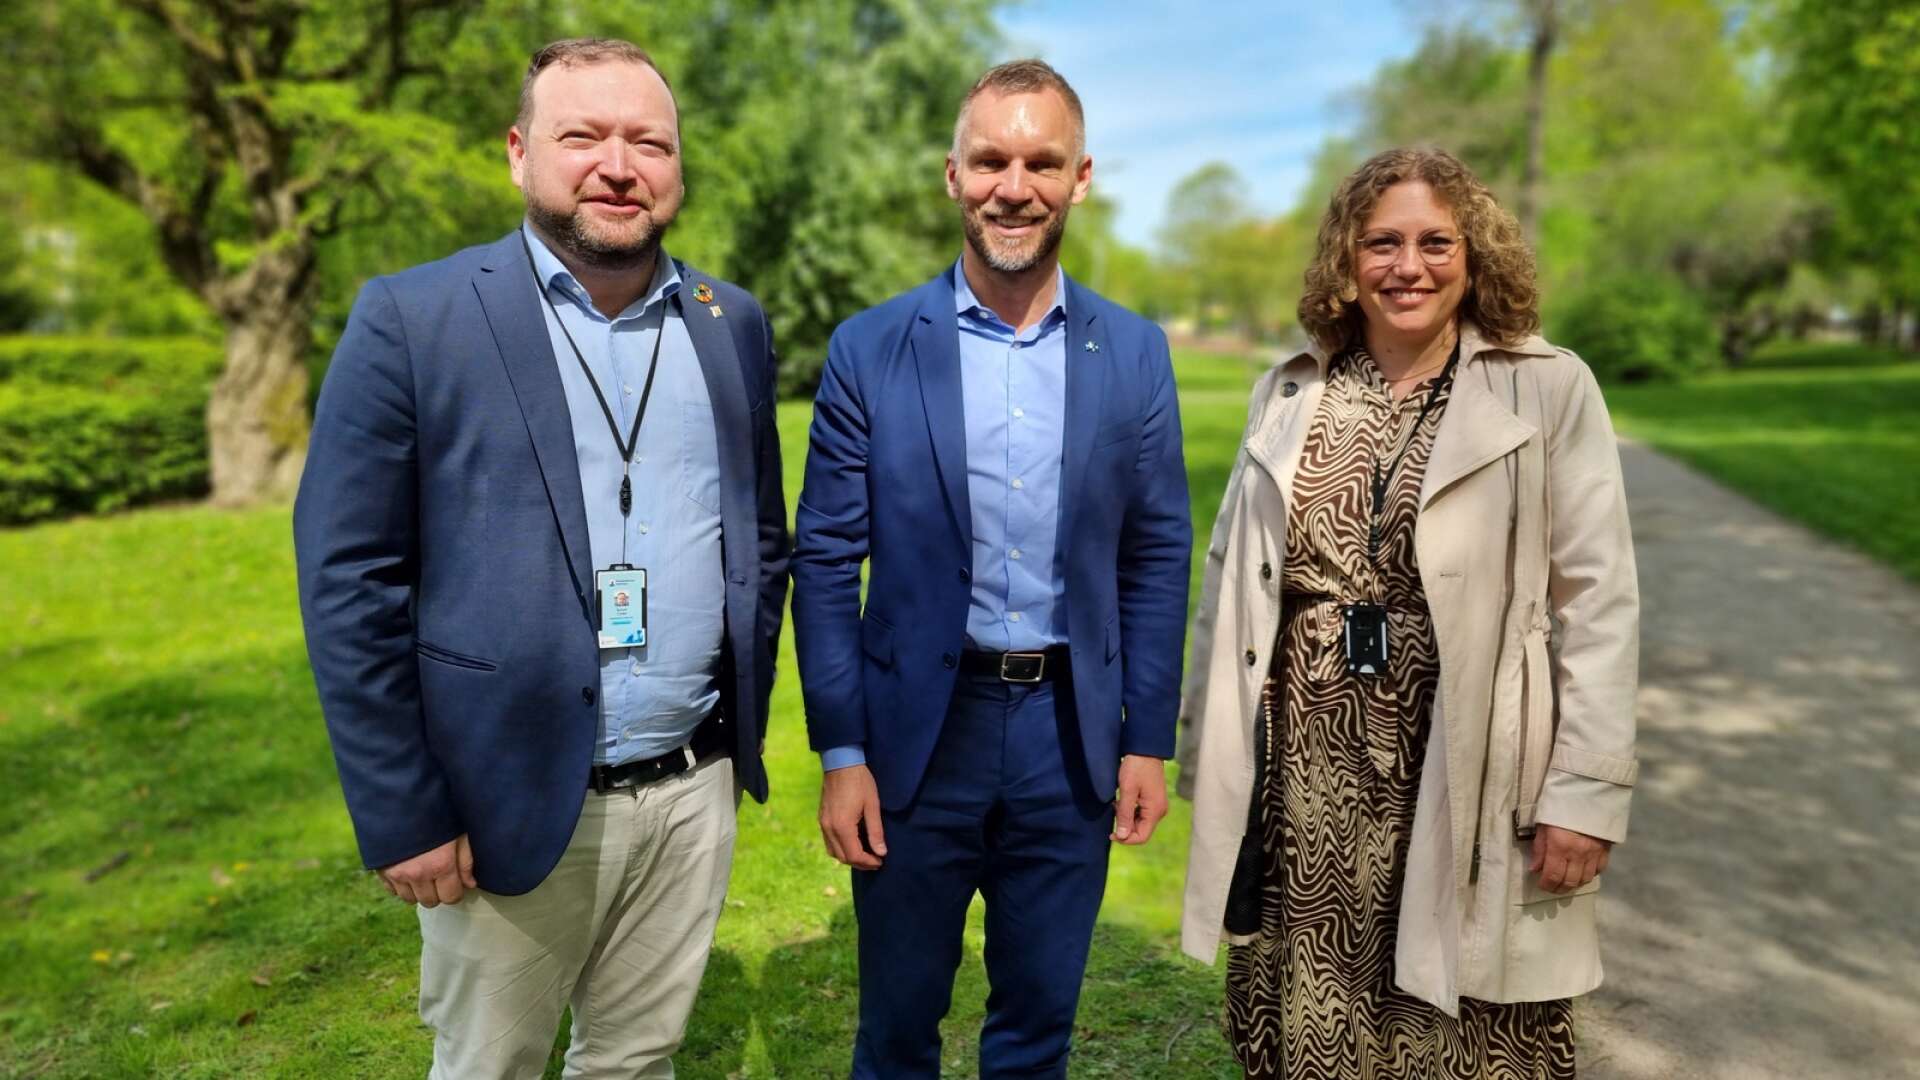 Civilminister Erik Slottner (KD) besökte under onsdagen Kristinehamn och träffade där bland andra Samuel Carlén (S) och Karin Ardefelt (S).